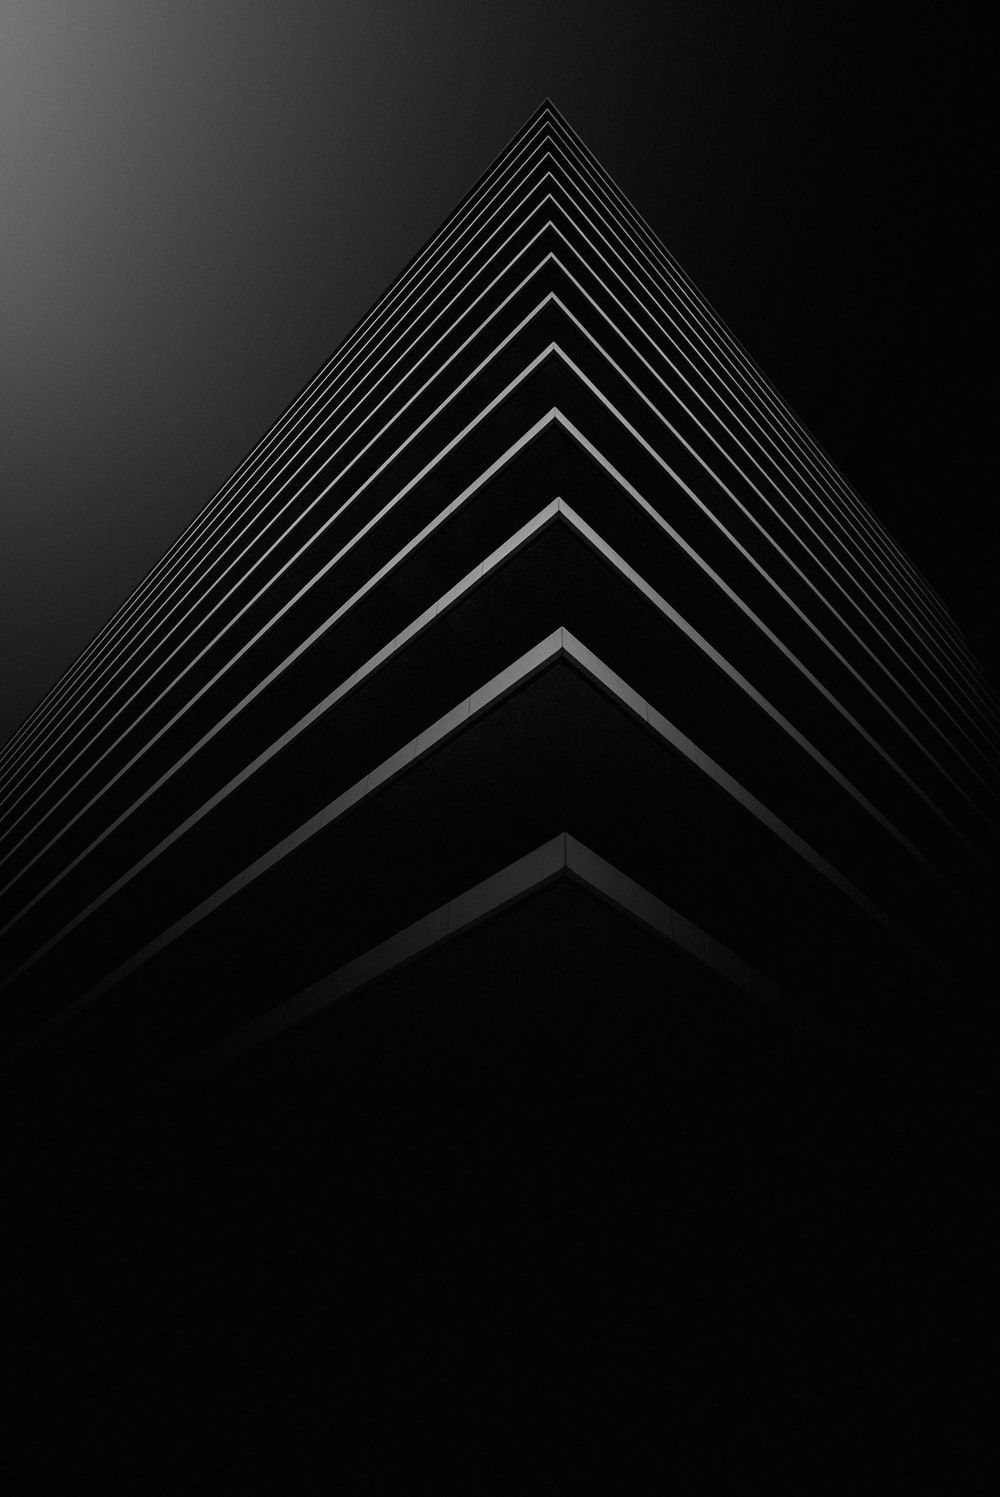 Black Wallpaper: Free HD Download [HQ]